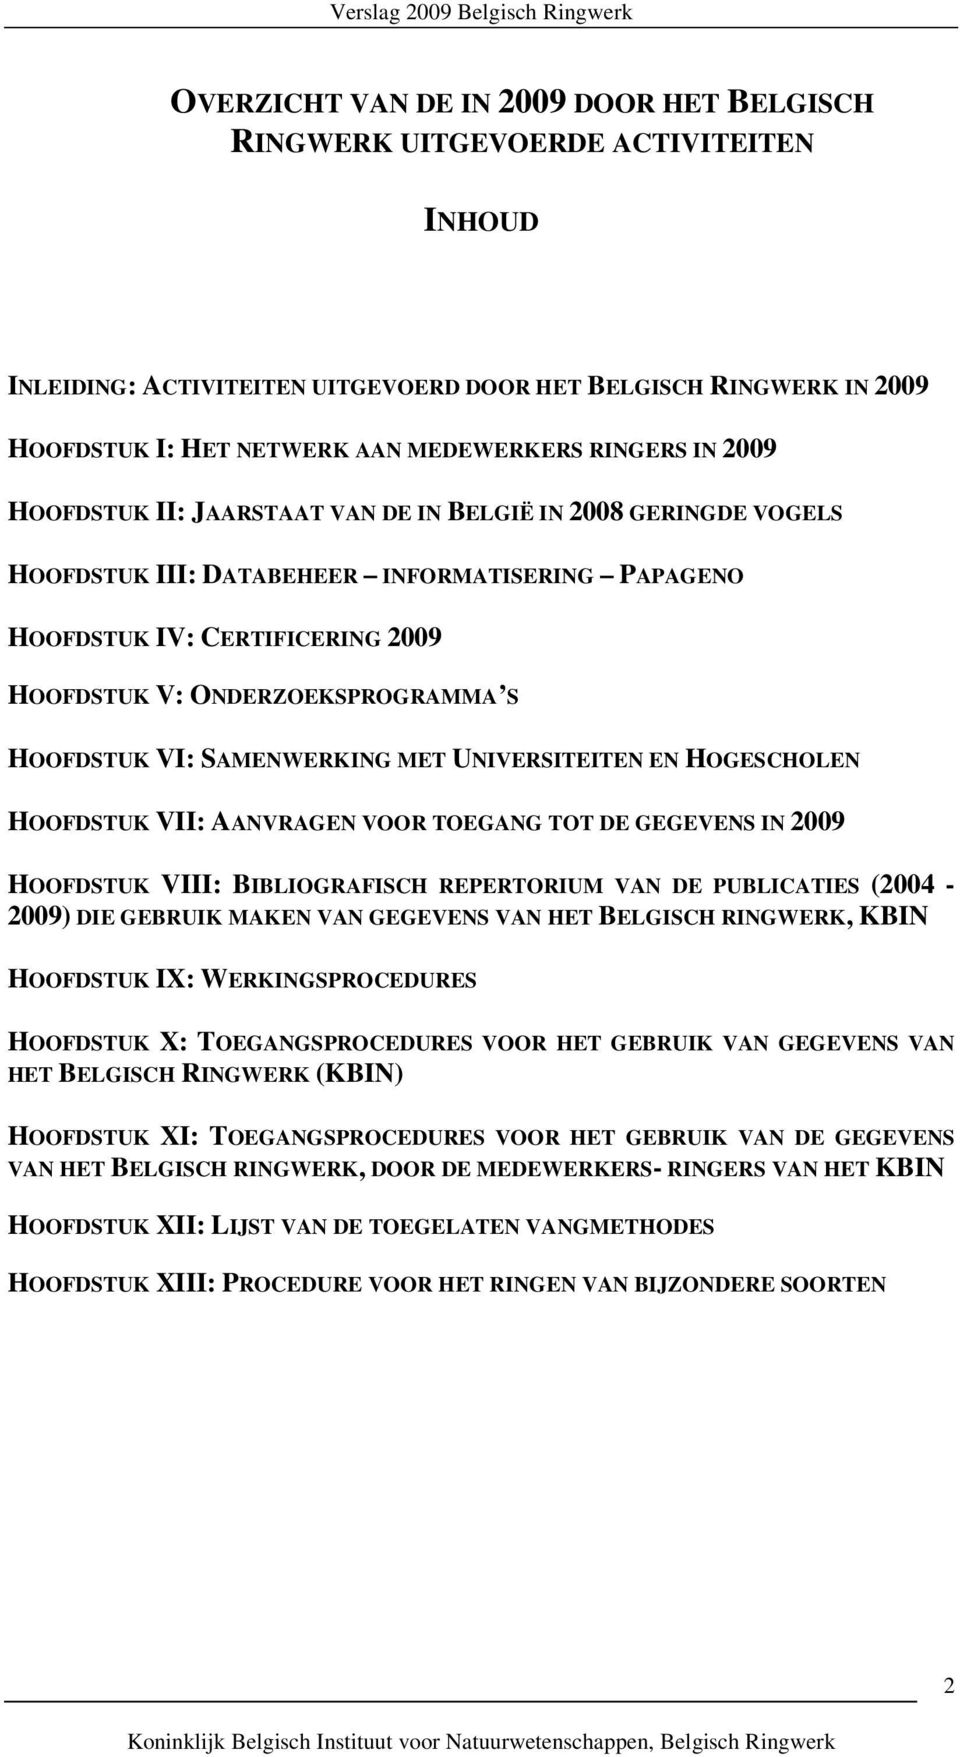 HOOFDSTUK VI: SAMENWERKING MET UNIVERSITEITEN EN HOGESCHOLEN HOOFDSTUK VII: AANVRAGEN VOOR TOEGANG TOT DE GEGEVENS IN 2009 HOOFDSTUK VIII: BIBLIOGRAFISCH REPERTORIUM VAN DE PUBLICATIES (2004-2009)